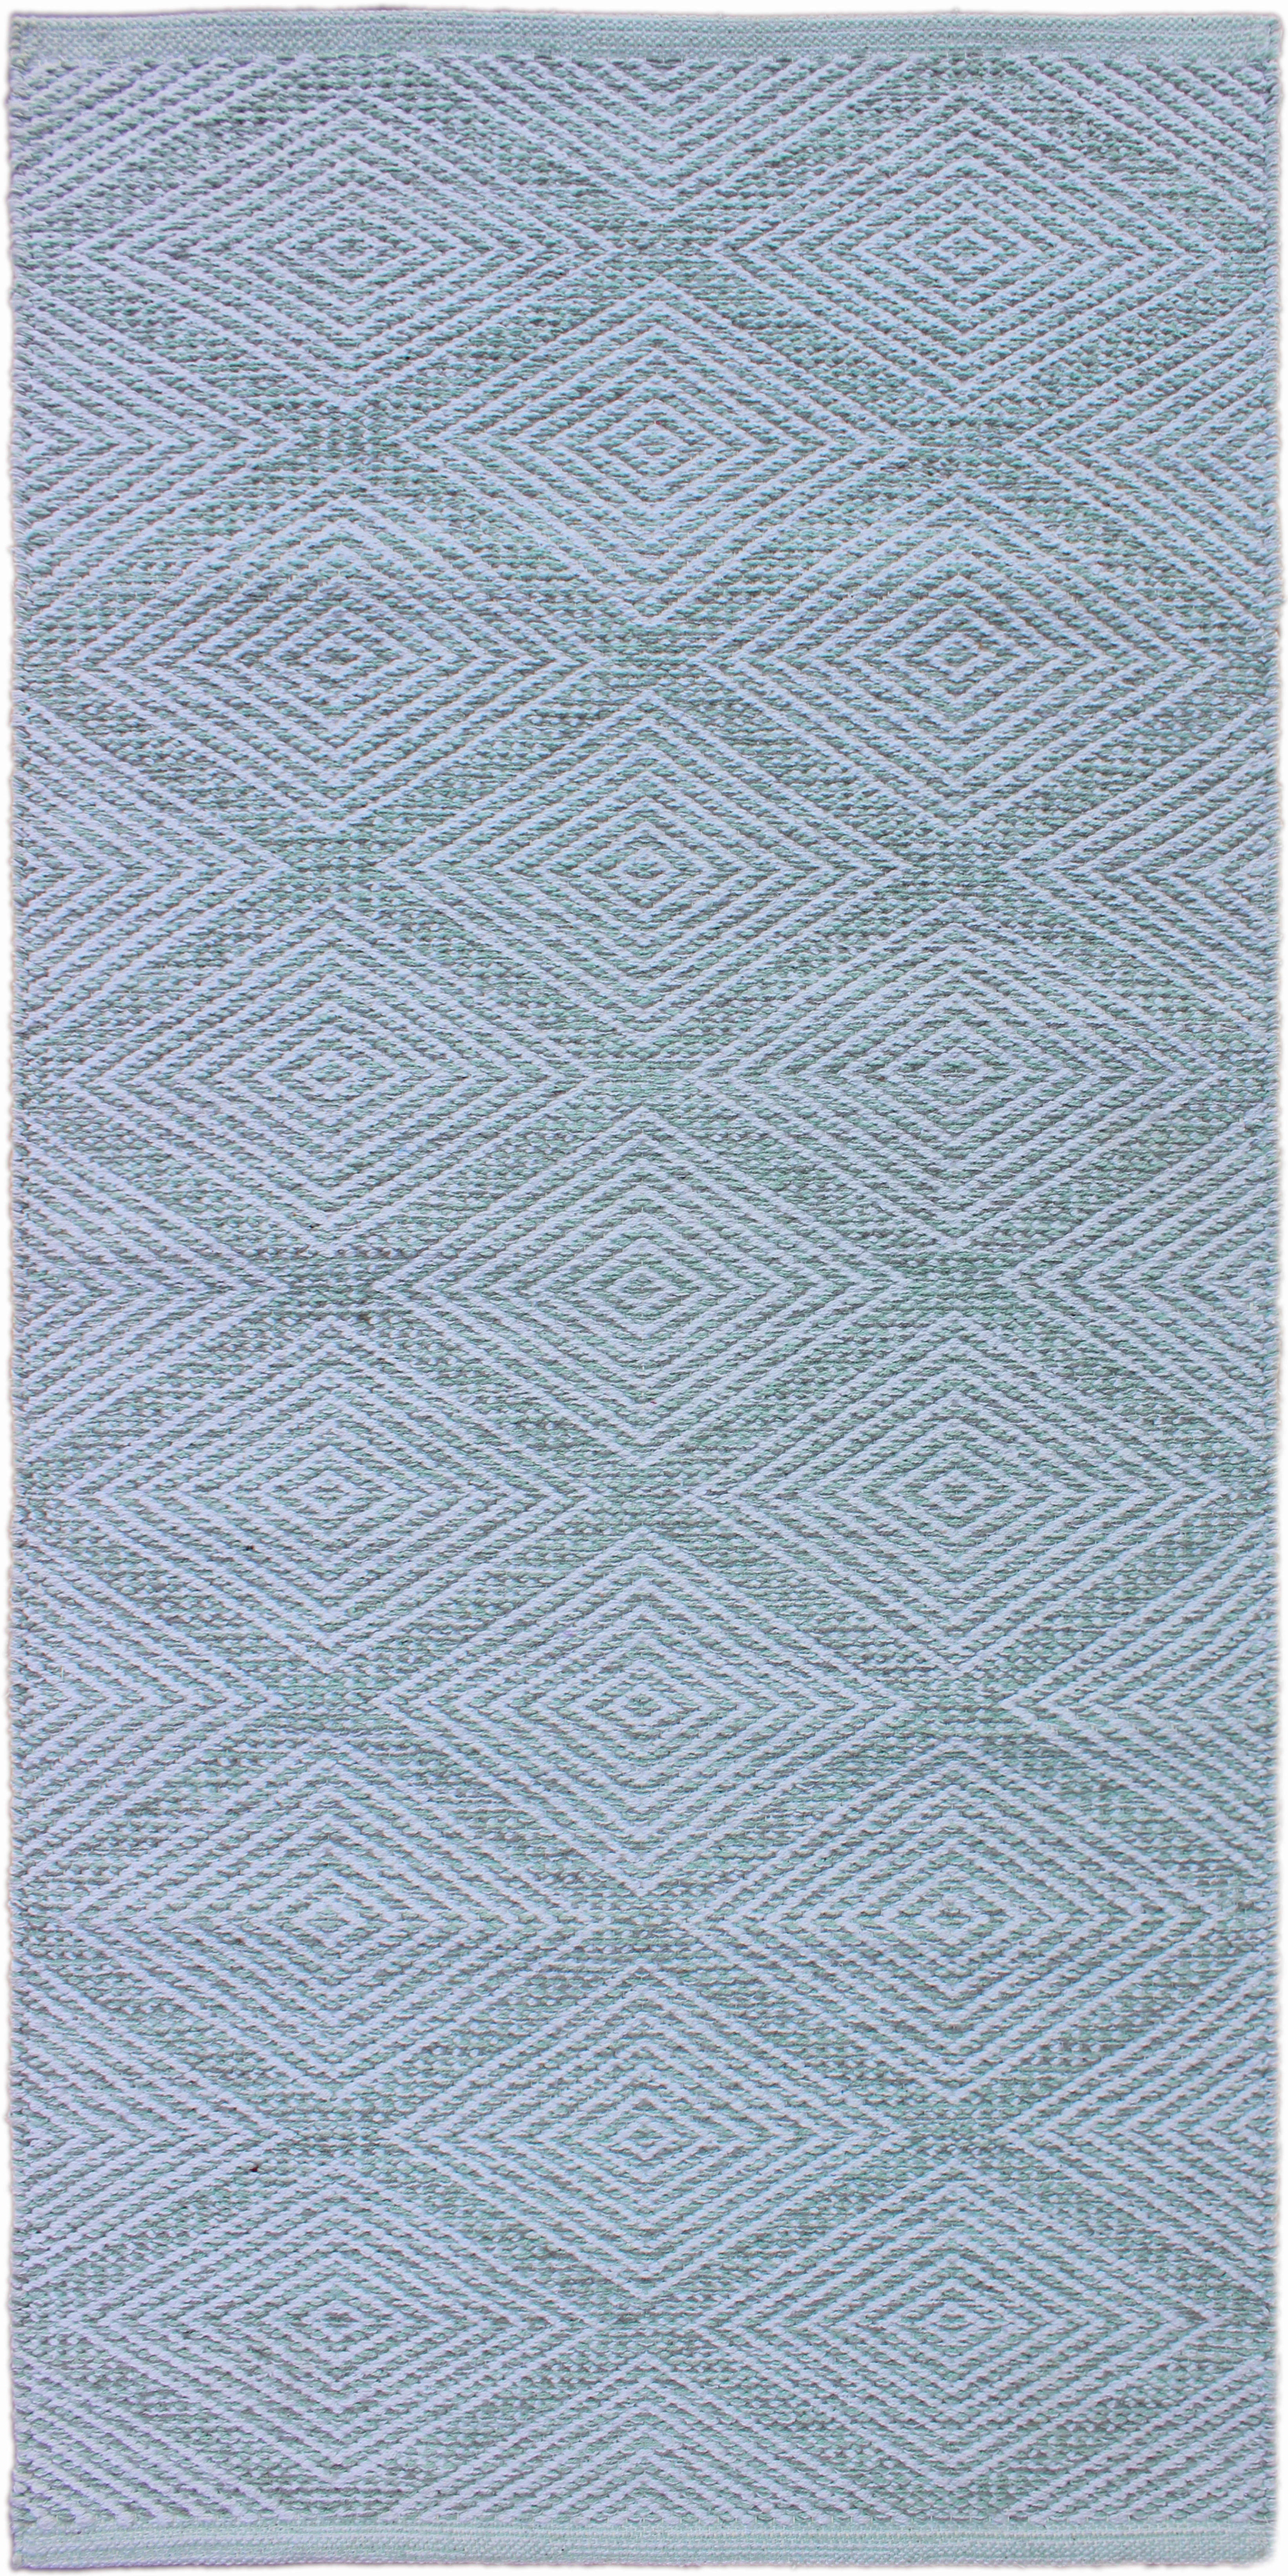 RONGYSZŐNYEG  Diamant LT.Green  - Zöld, Design, Textil (60/120cm) - Linea Natura